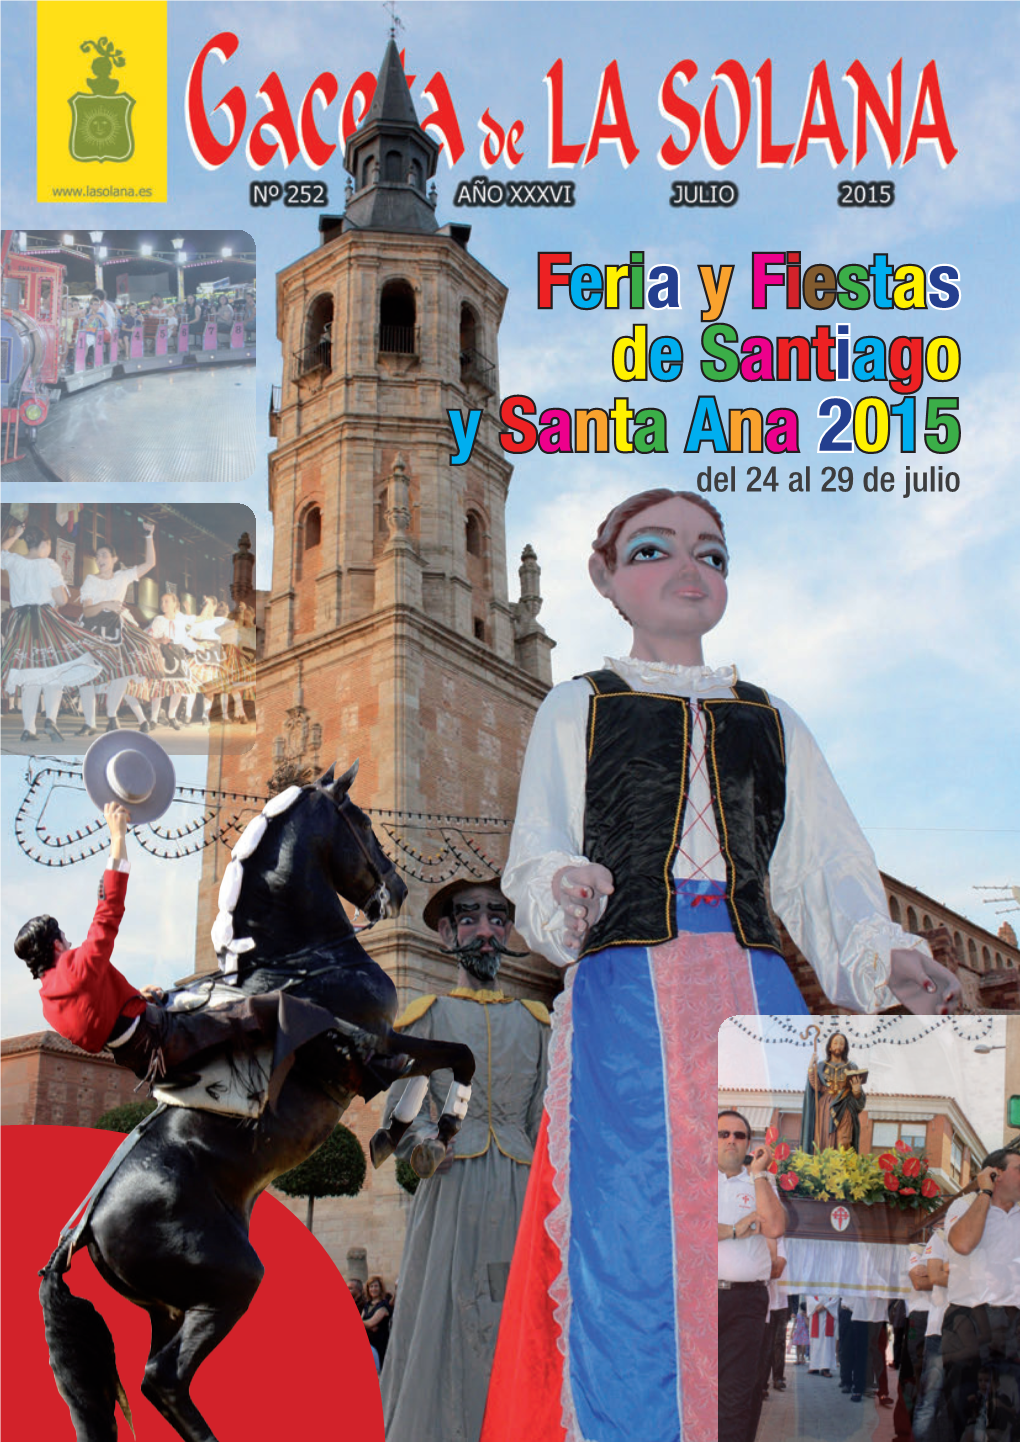 Feria Y Fiestas De Santiago Y Santa Ana 2015 Del 24 Al 29 De Julio